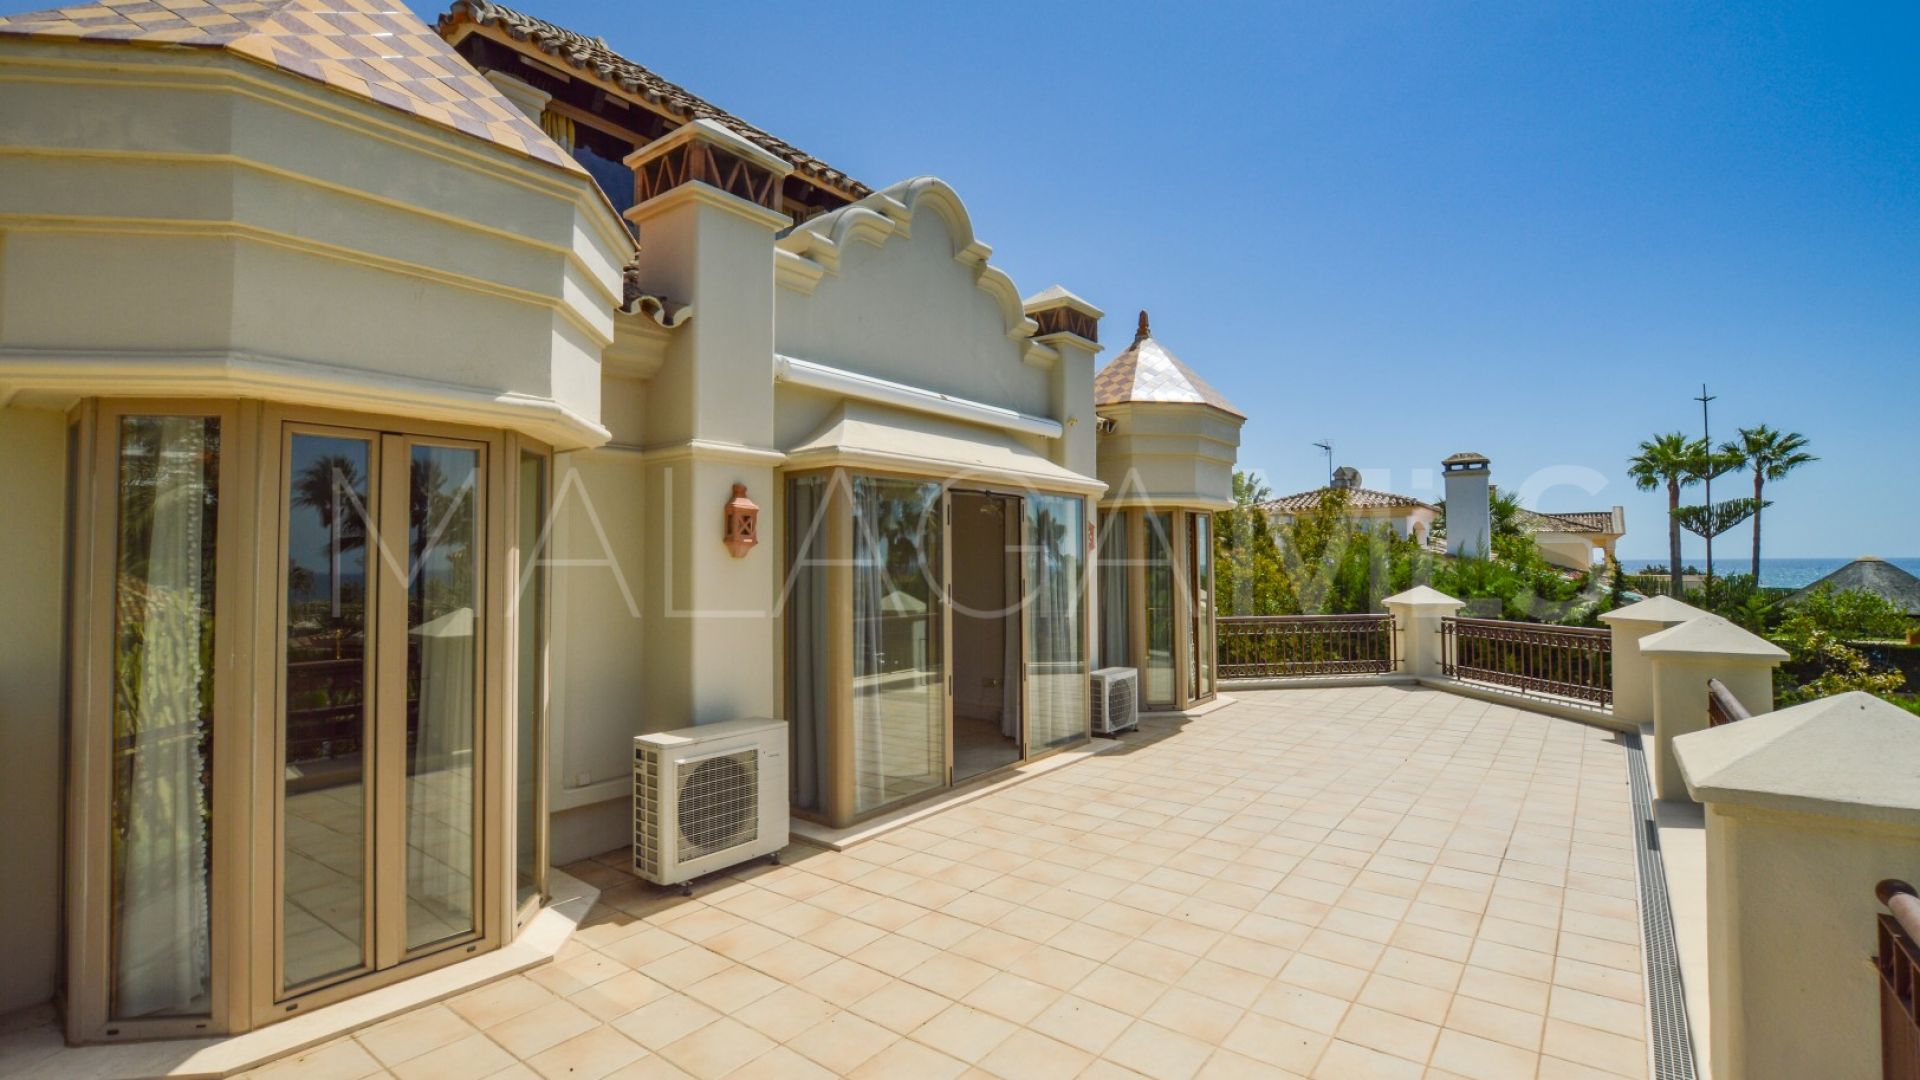 5 bedrooms villa in Costabella for sale